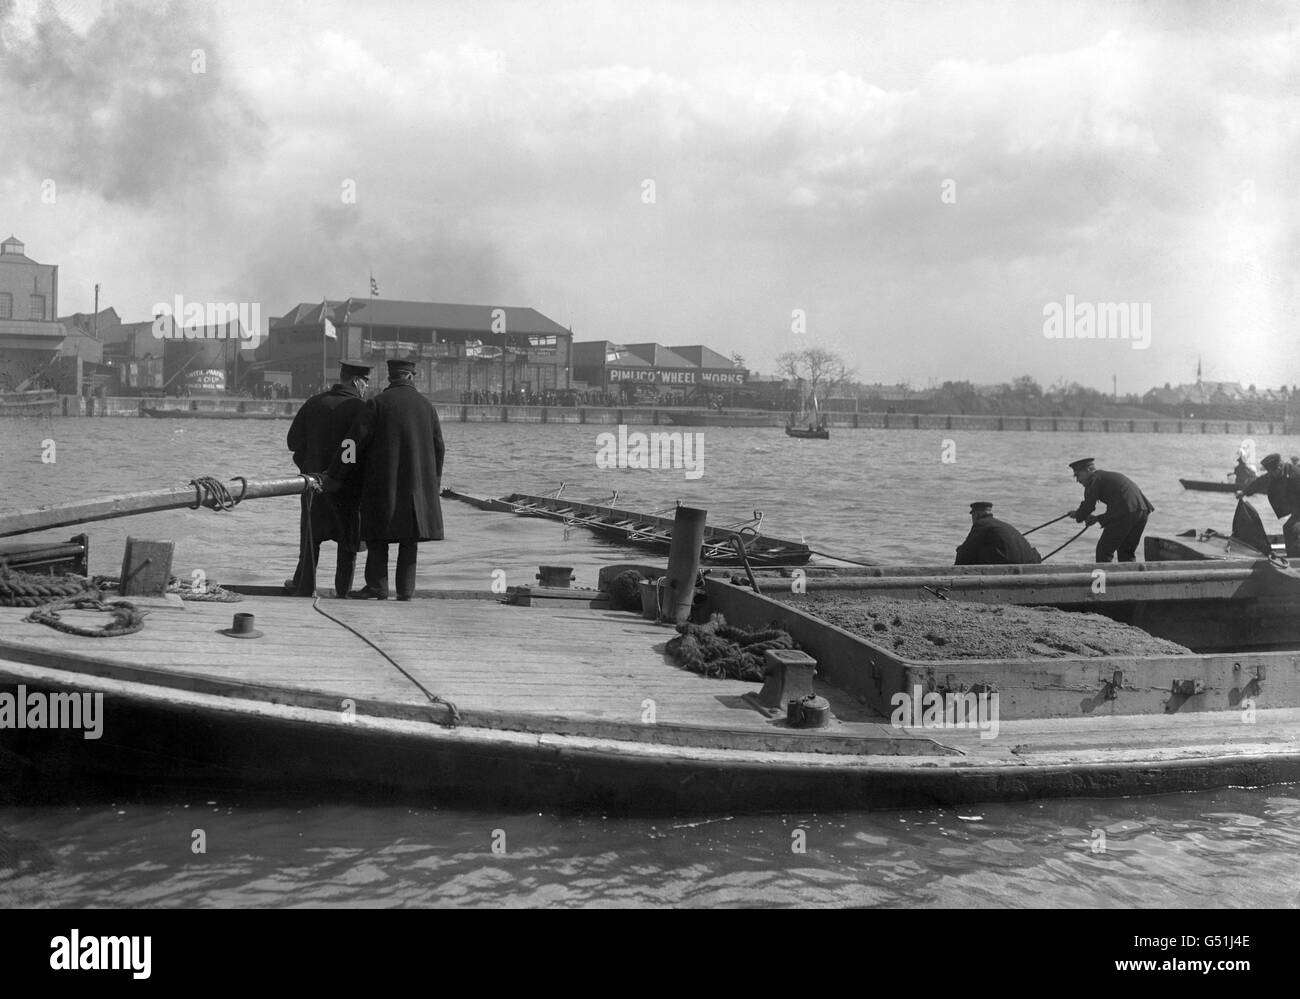 Das Boot aus Cambridge wurde gerettet, nachdem es während des Bootsrennens gesunken war. Das University Boat Race von 1912 ist einzigartig in der Geschichte des Rennens, da es die einzige Gelegenheit ist, wenn beide Crews gesunken sind. Stockfoto